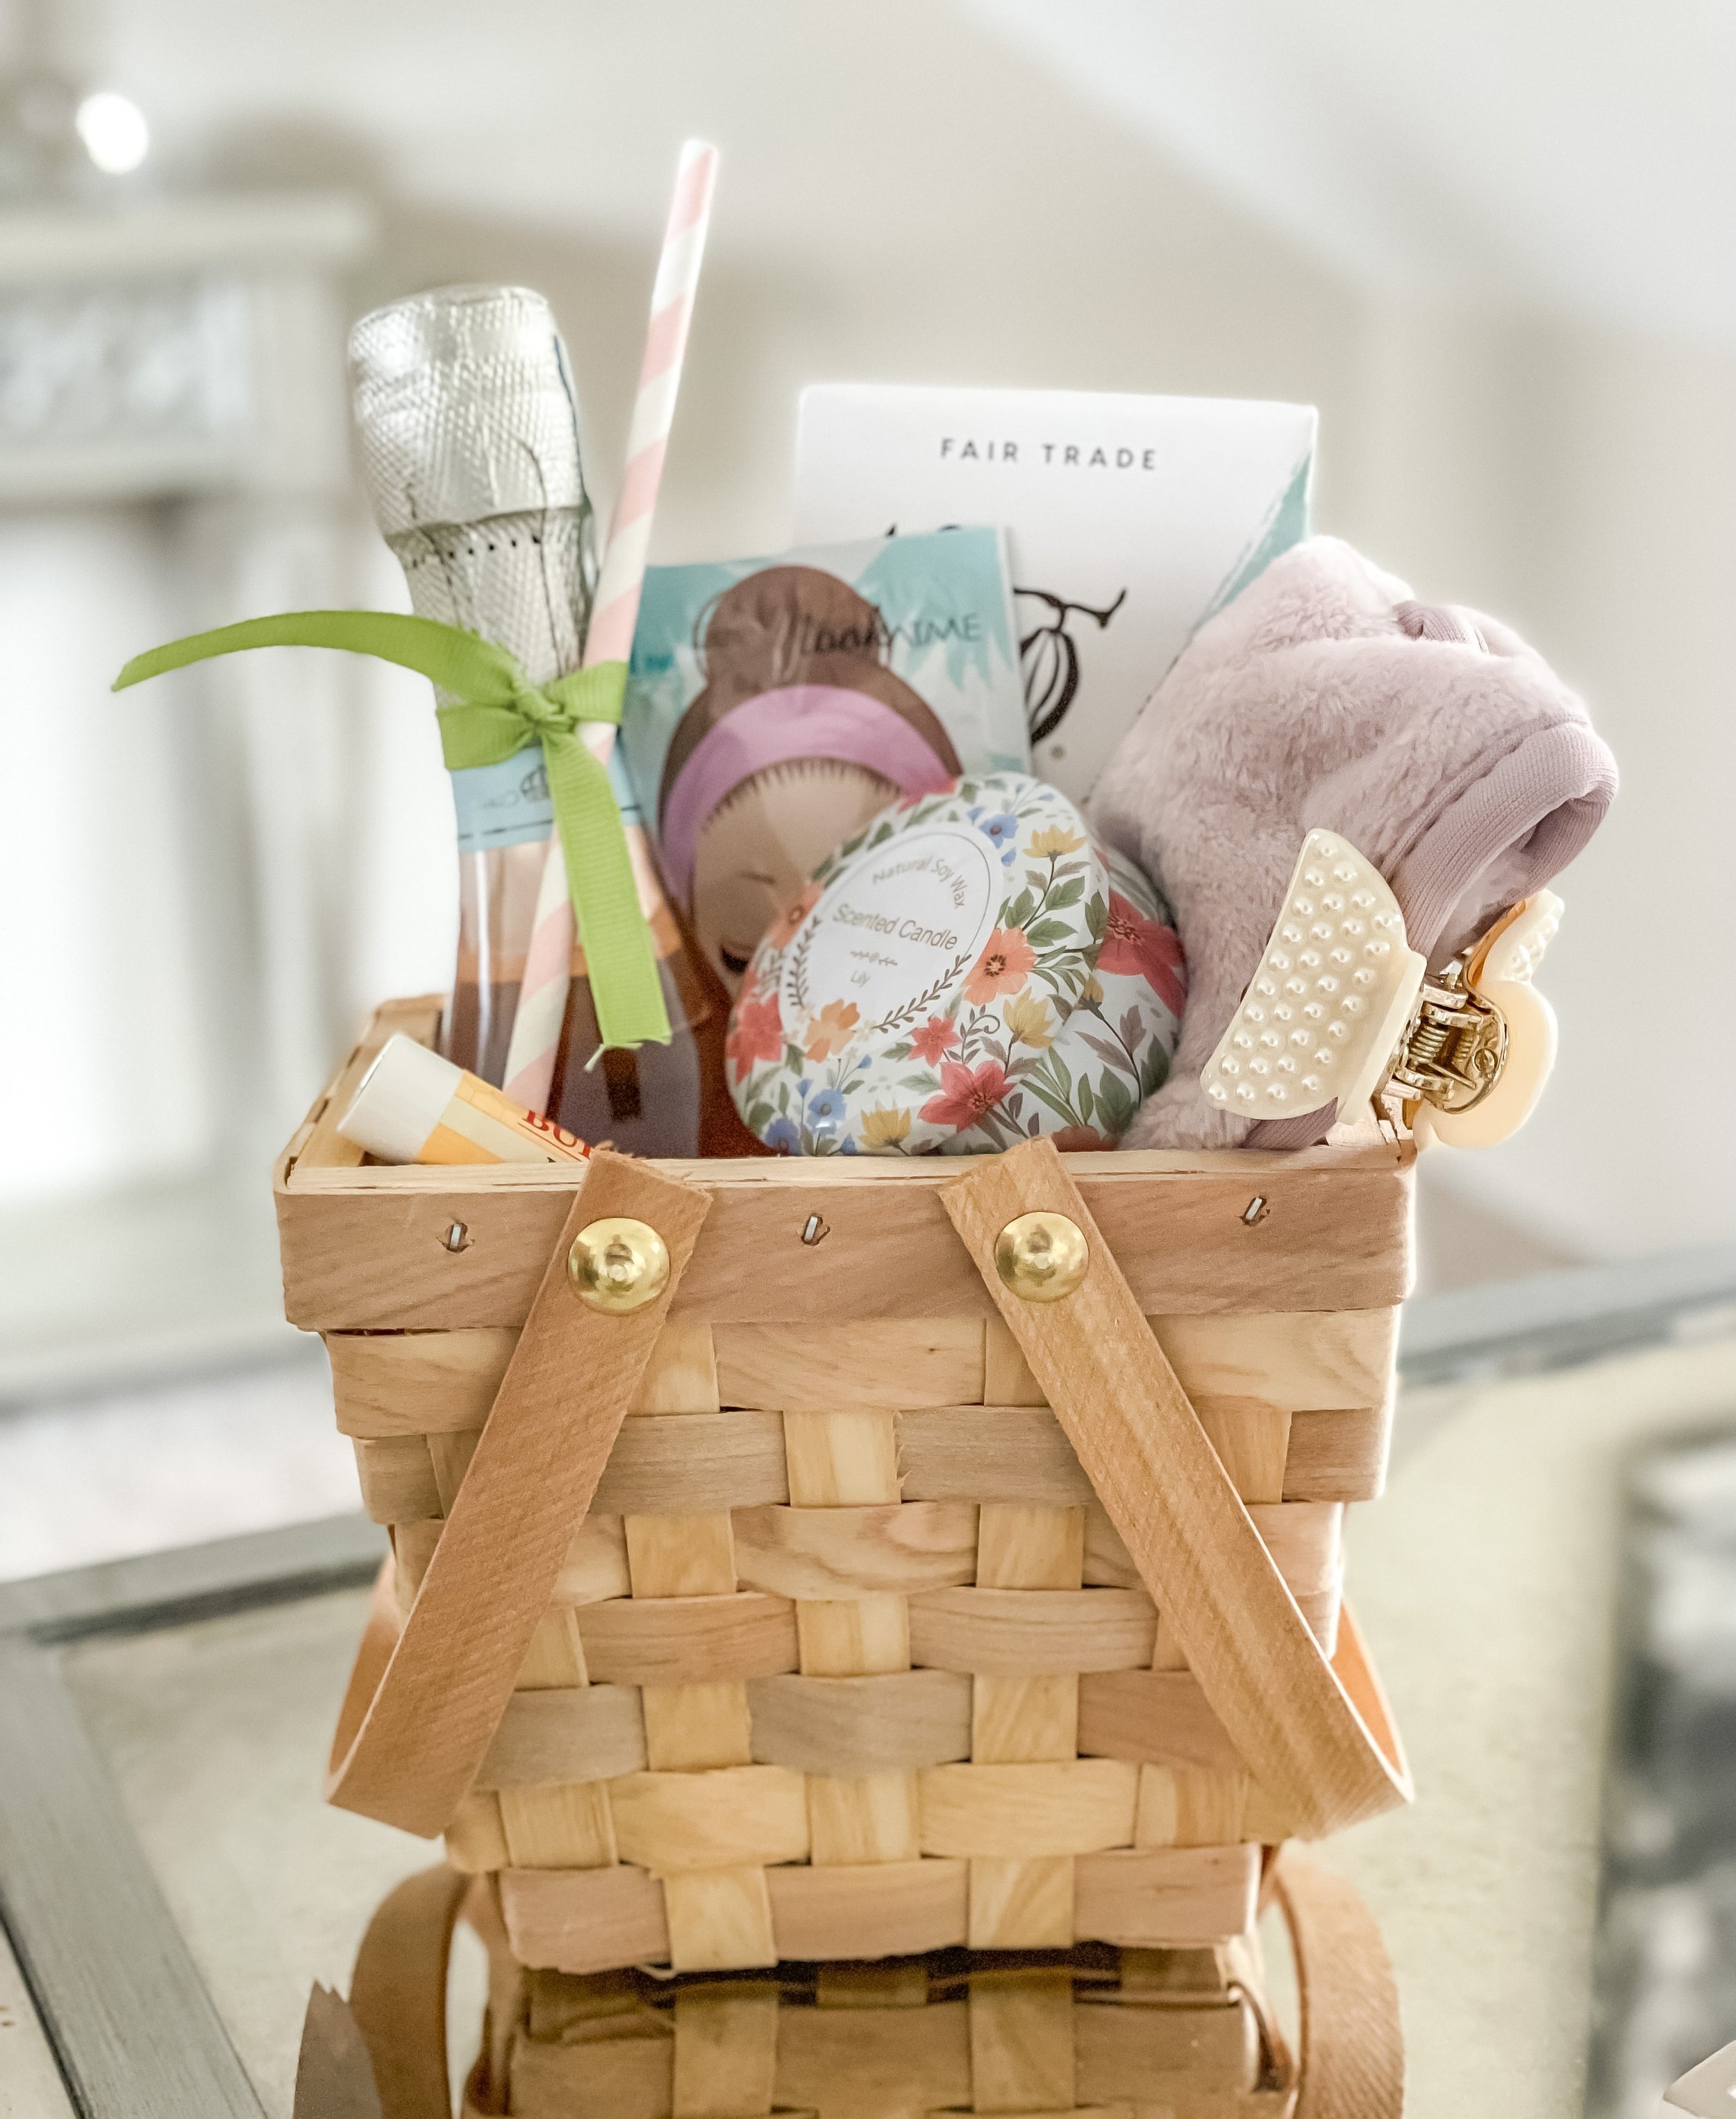 Details more than 109 gift hamper basket ideas latest